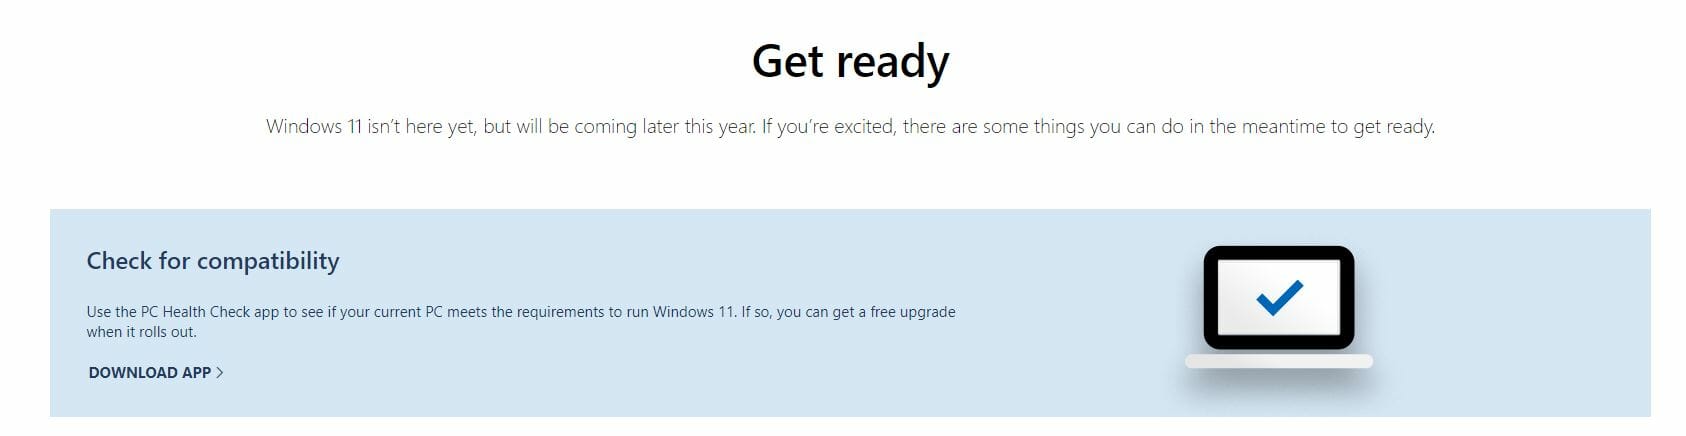 Windows 11 disponible para descargar para Insiders, la próxima semana